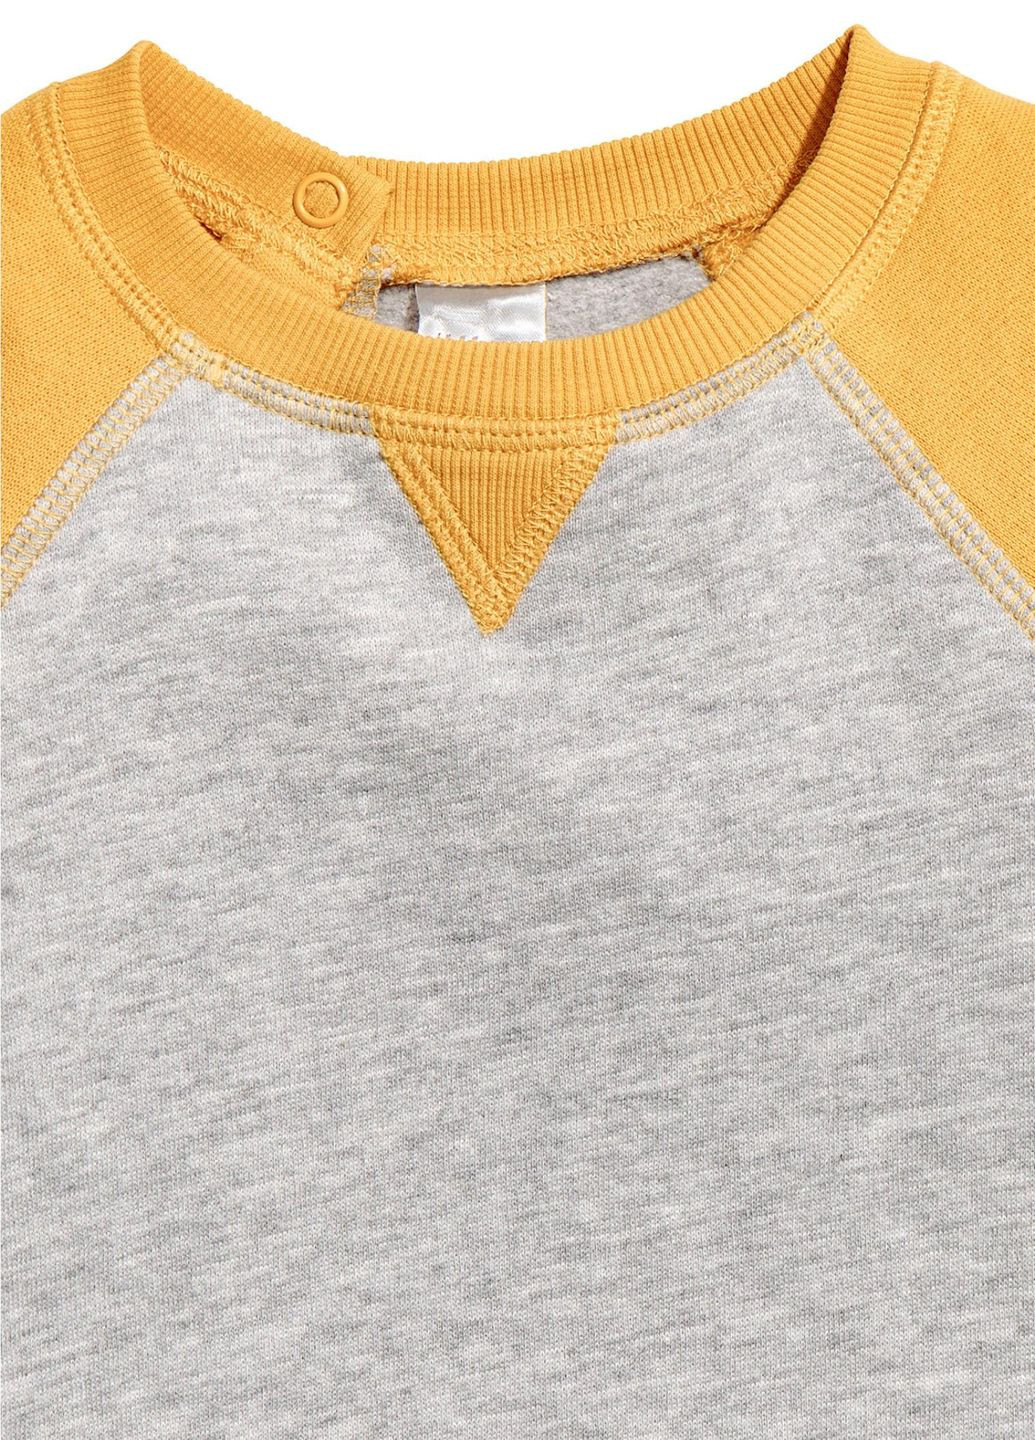 H&M світшот фліс,сірий-жовтий, сірий